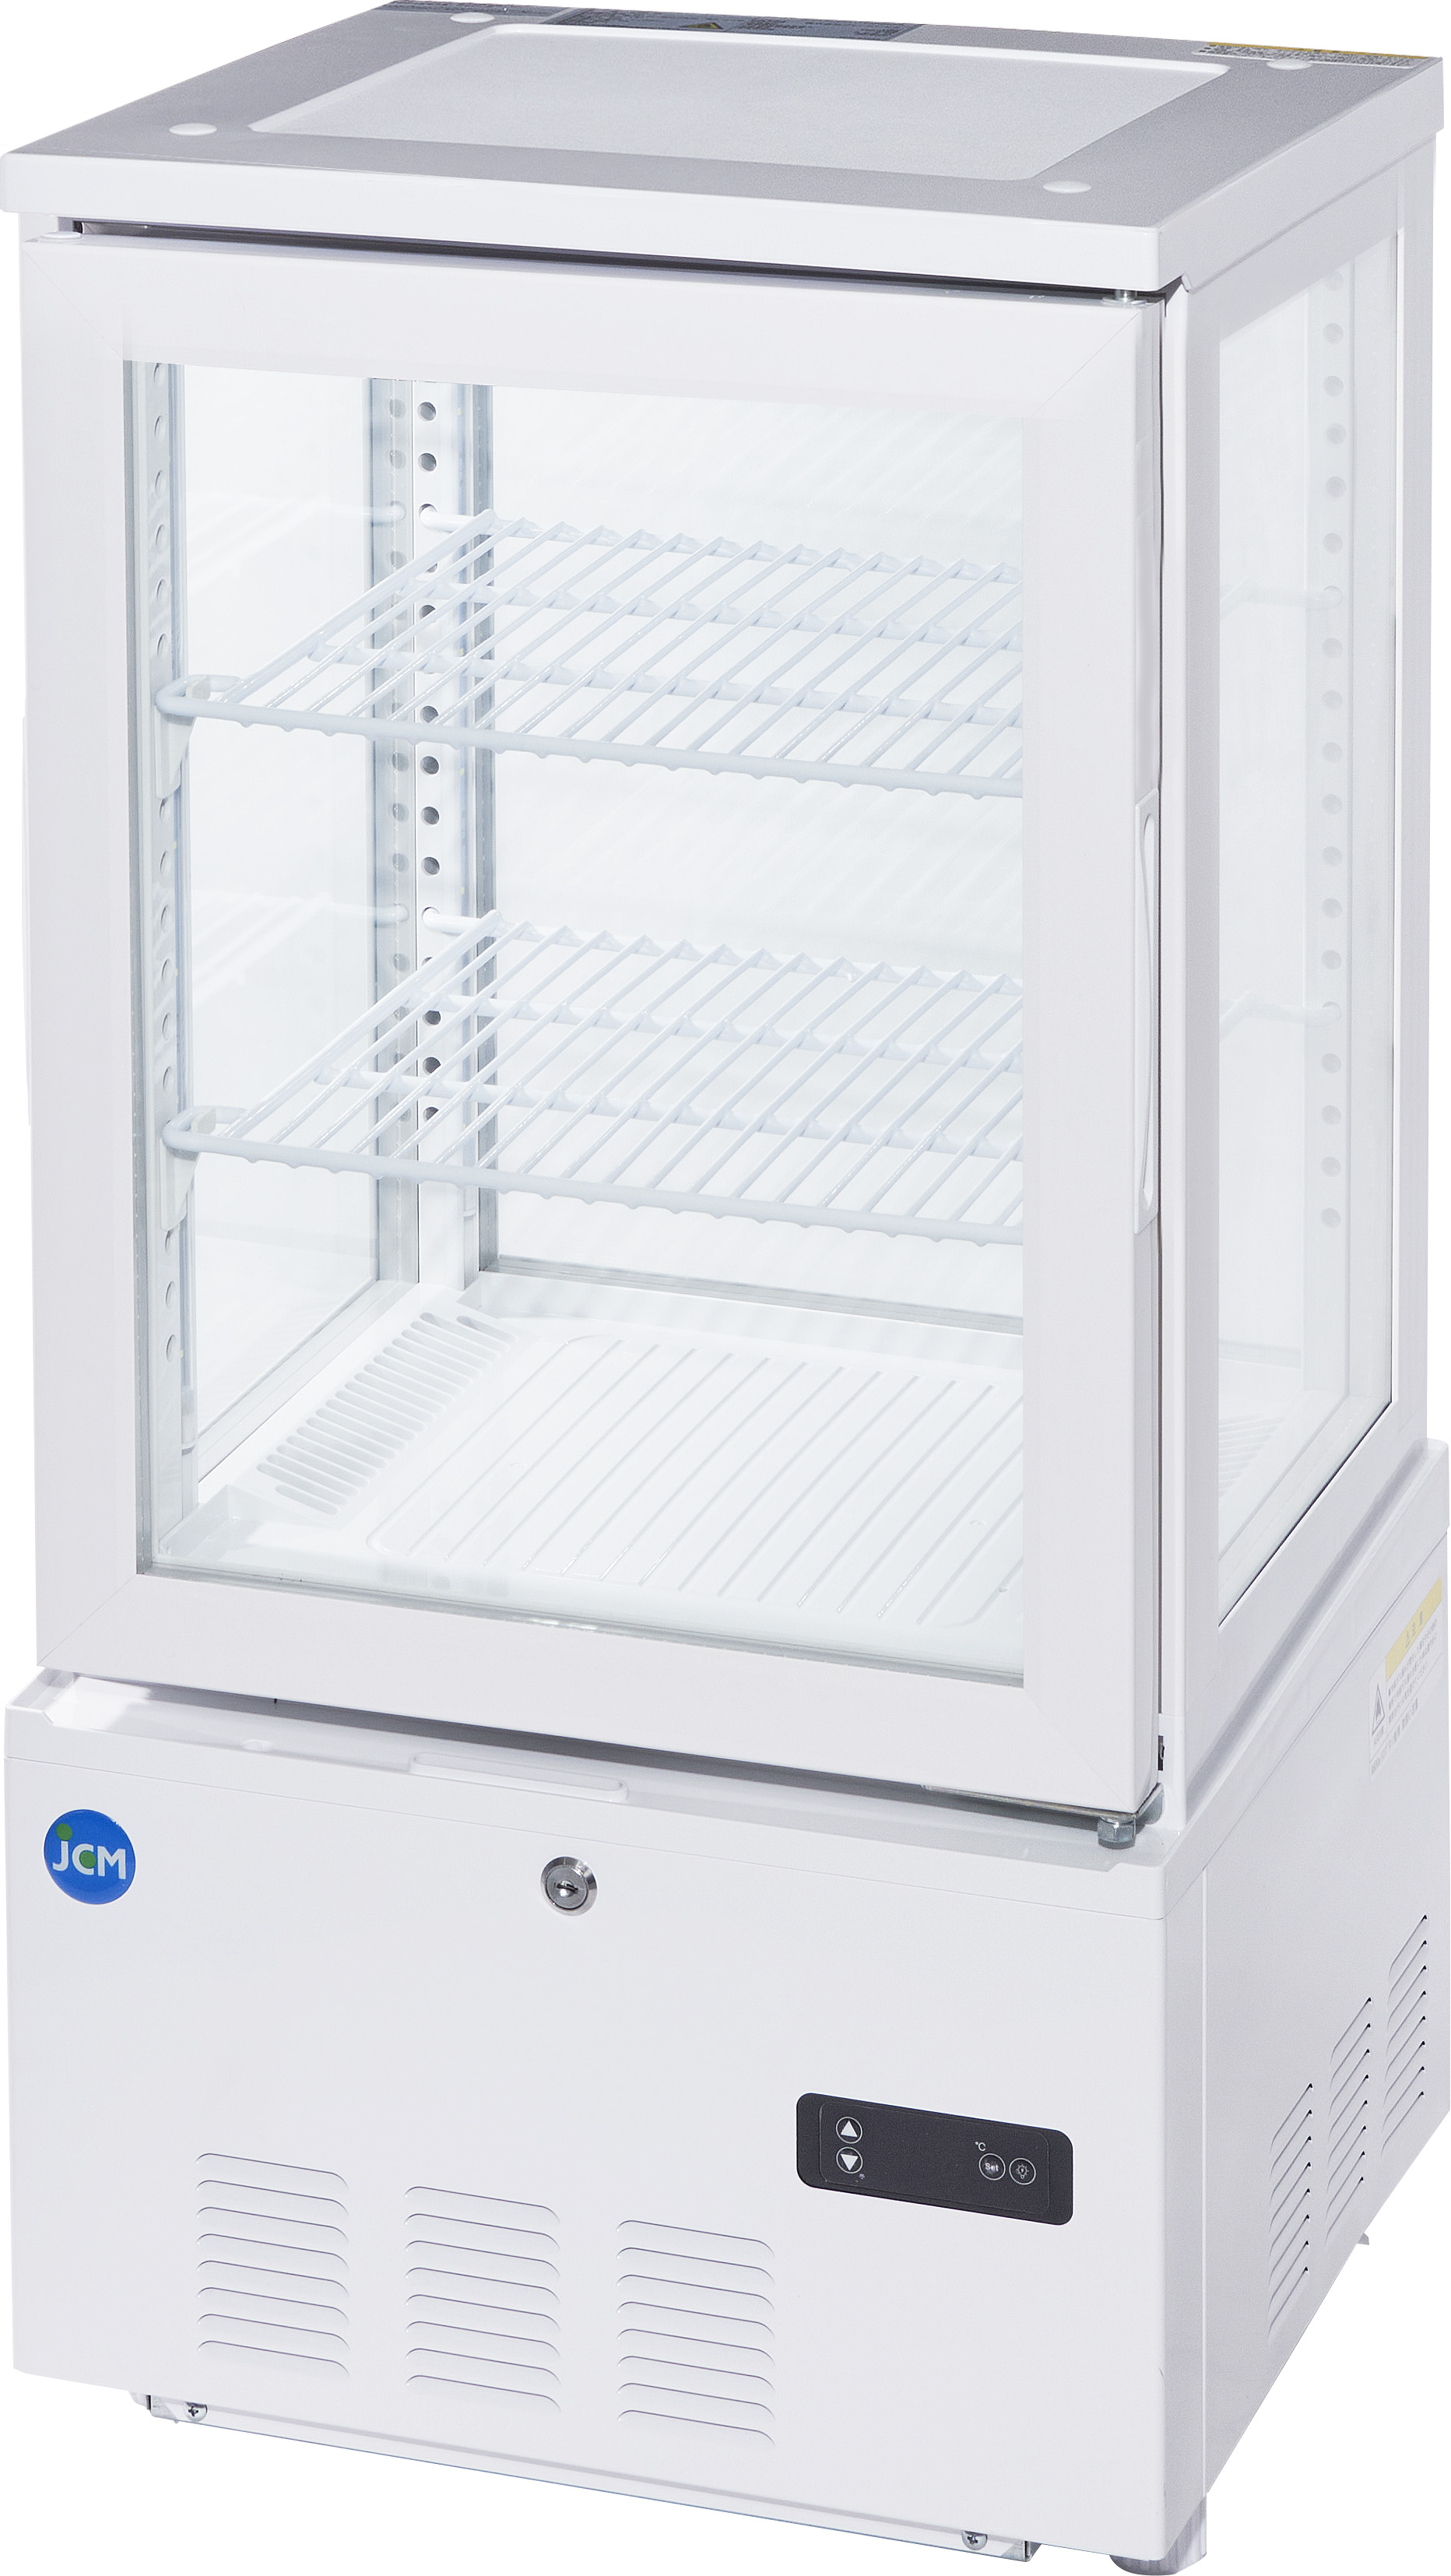 本店は JCM 業務用冷凍冷蔵機器メーカー 創業記念 期間限定